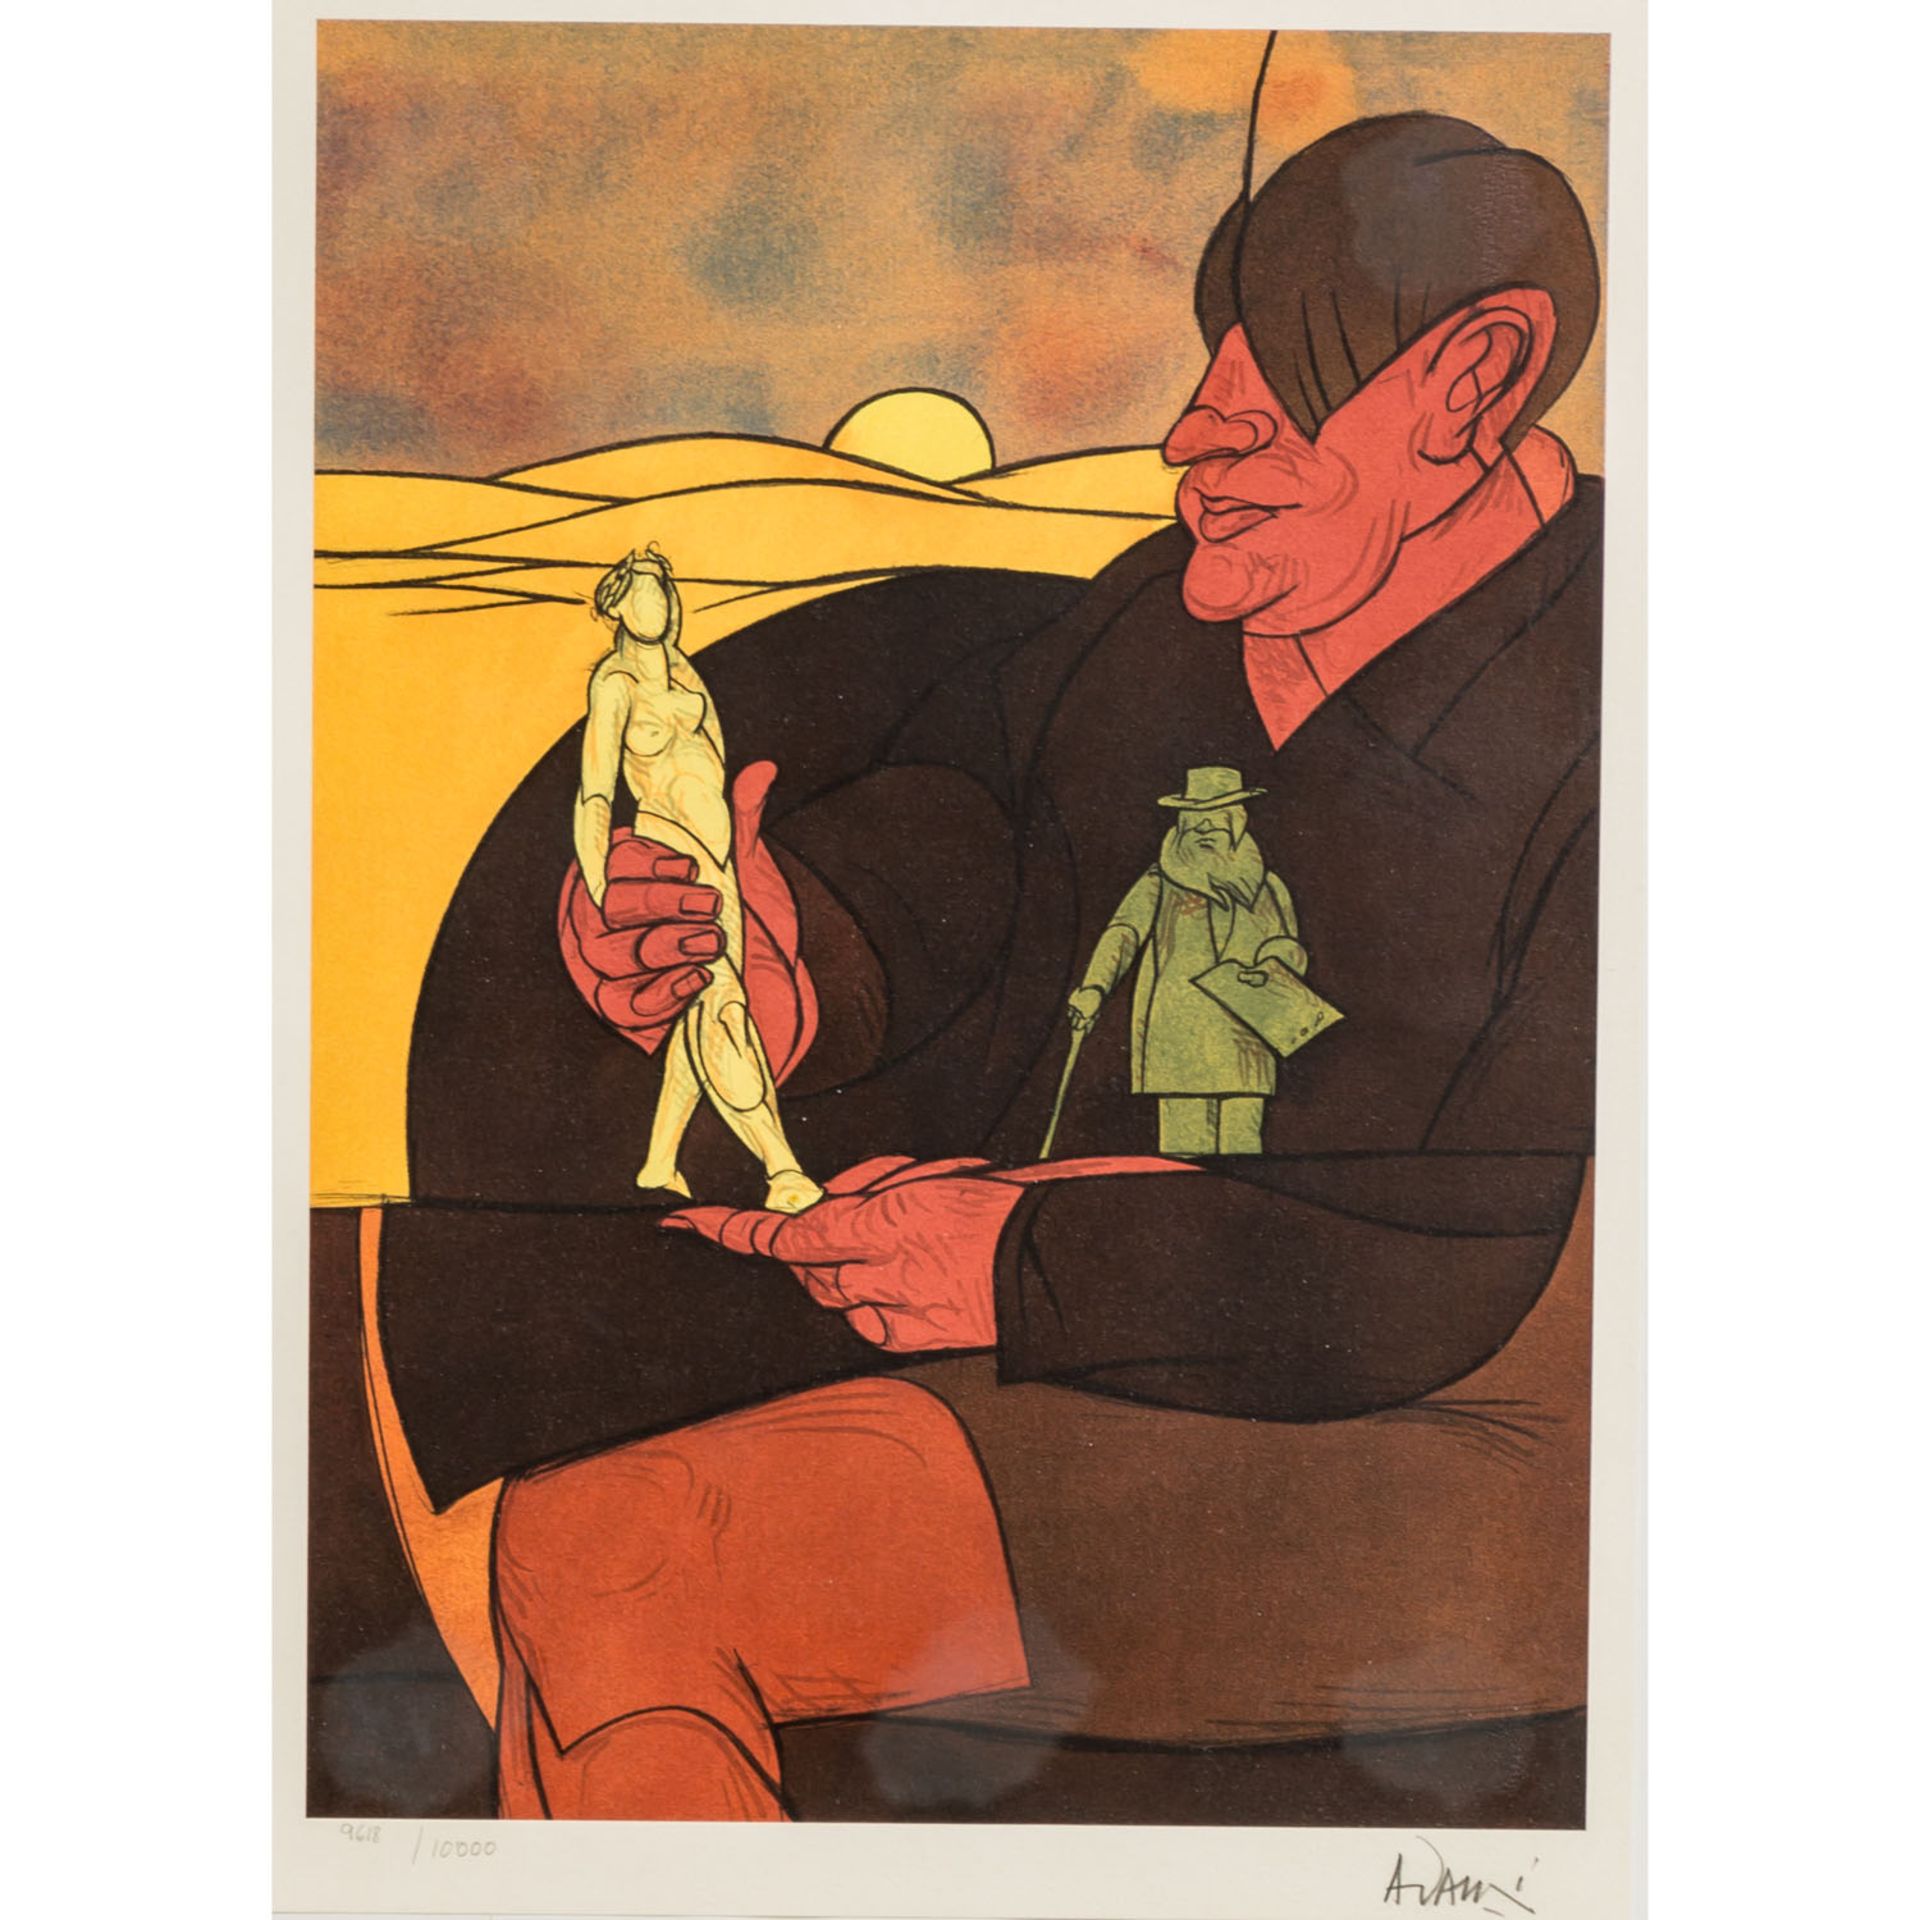 ADAMI, VALERIO (1935) "Der Sammler" farbige Lithographie auf Velin, mit Bleistift handsigniert und